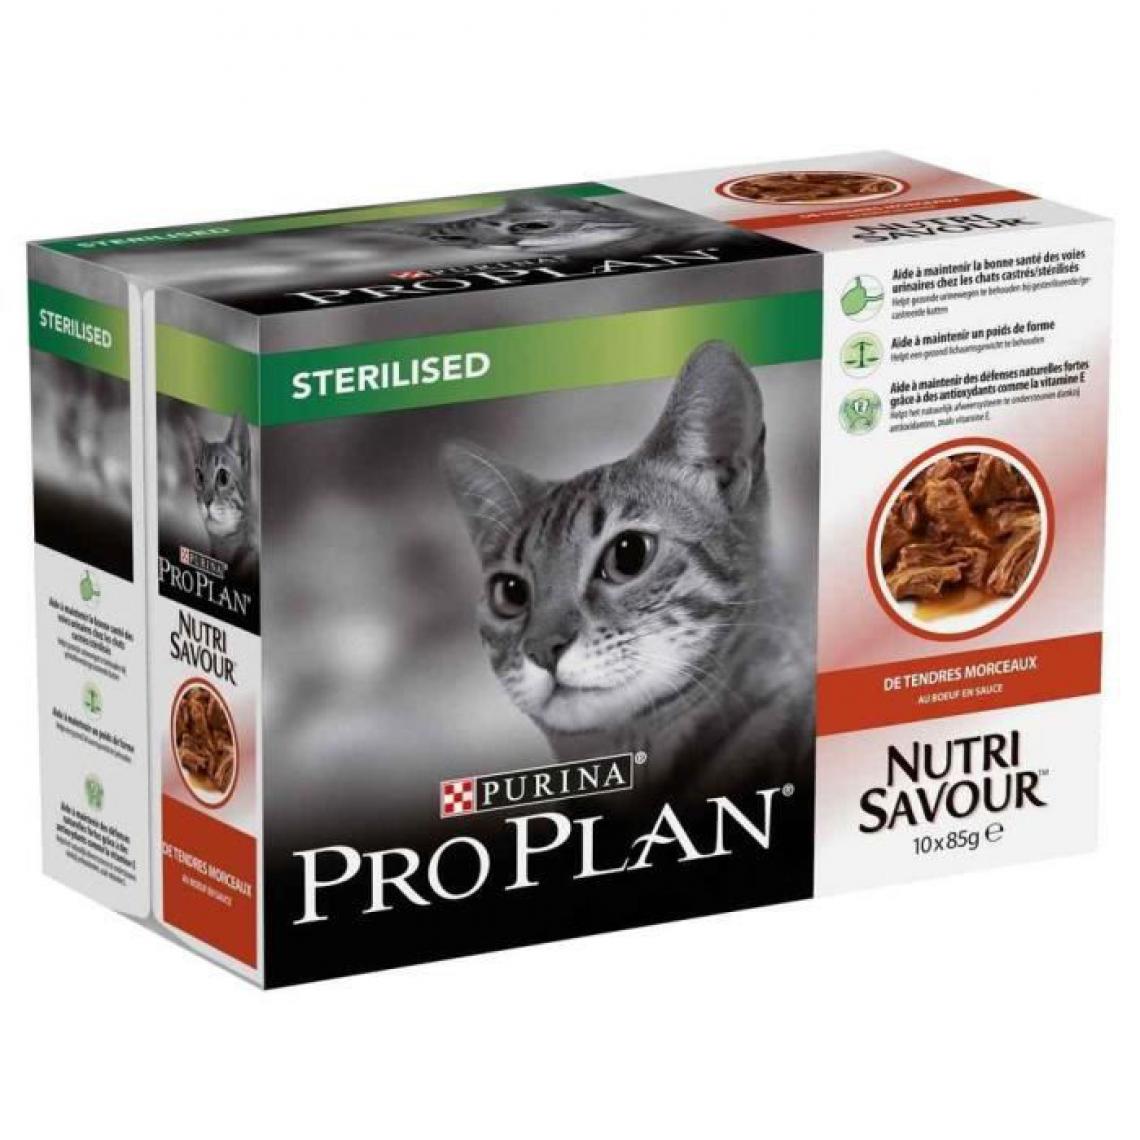 Pro plan - PRO PLAN Multipack patée au boeuf - Pour chat stérilisé - 10 x 85 g - Alimentation humide pour chat